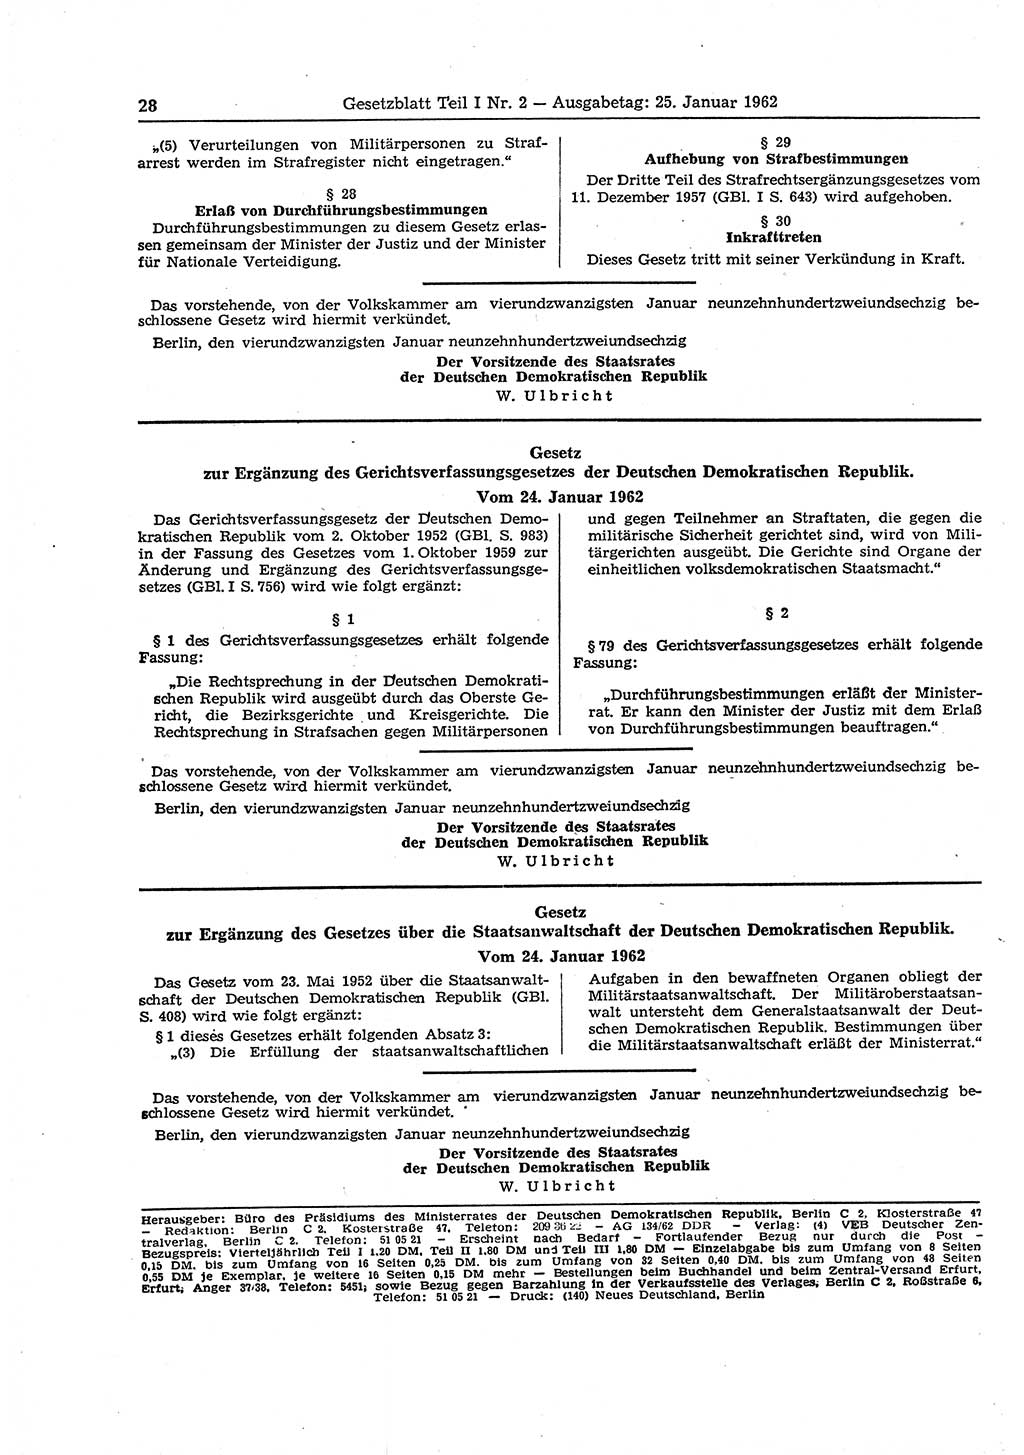 Gesetzblatt (GBl.) der Deutschen Demokratischen Republik (DDR) Teil Ⅰ 1962, Seite 28 (GBl. DDR Ⅰ 1962, S. 28)